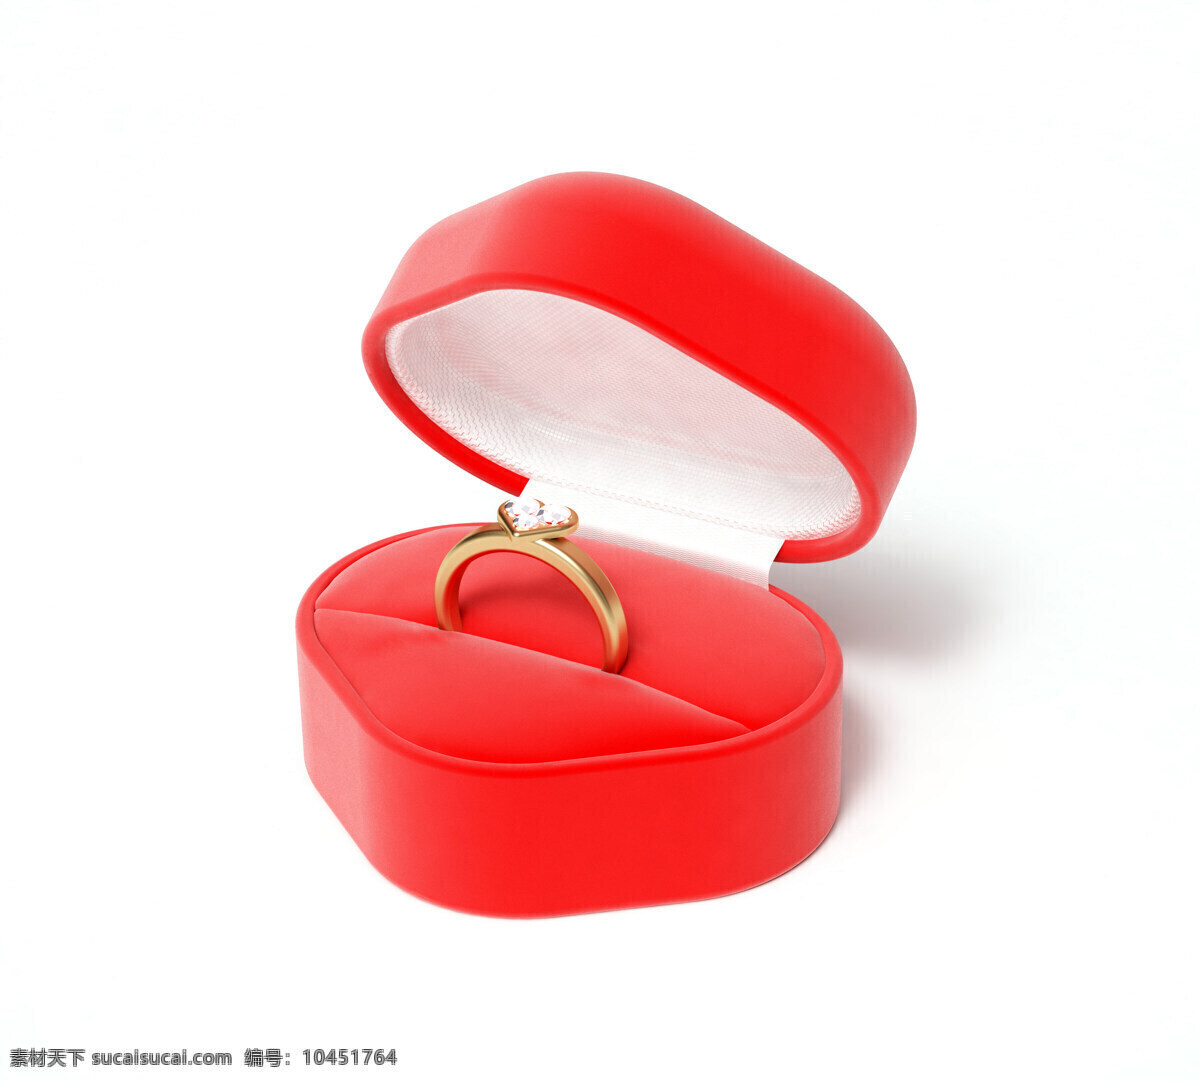 心形 戒子 樱桃形状 爱情 红心 情人节素材 3d作品 3d设计 其他类别 生活百科